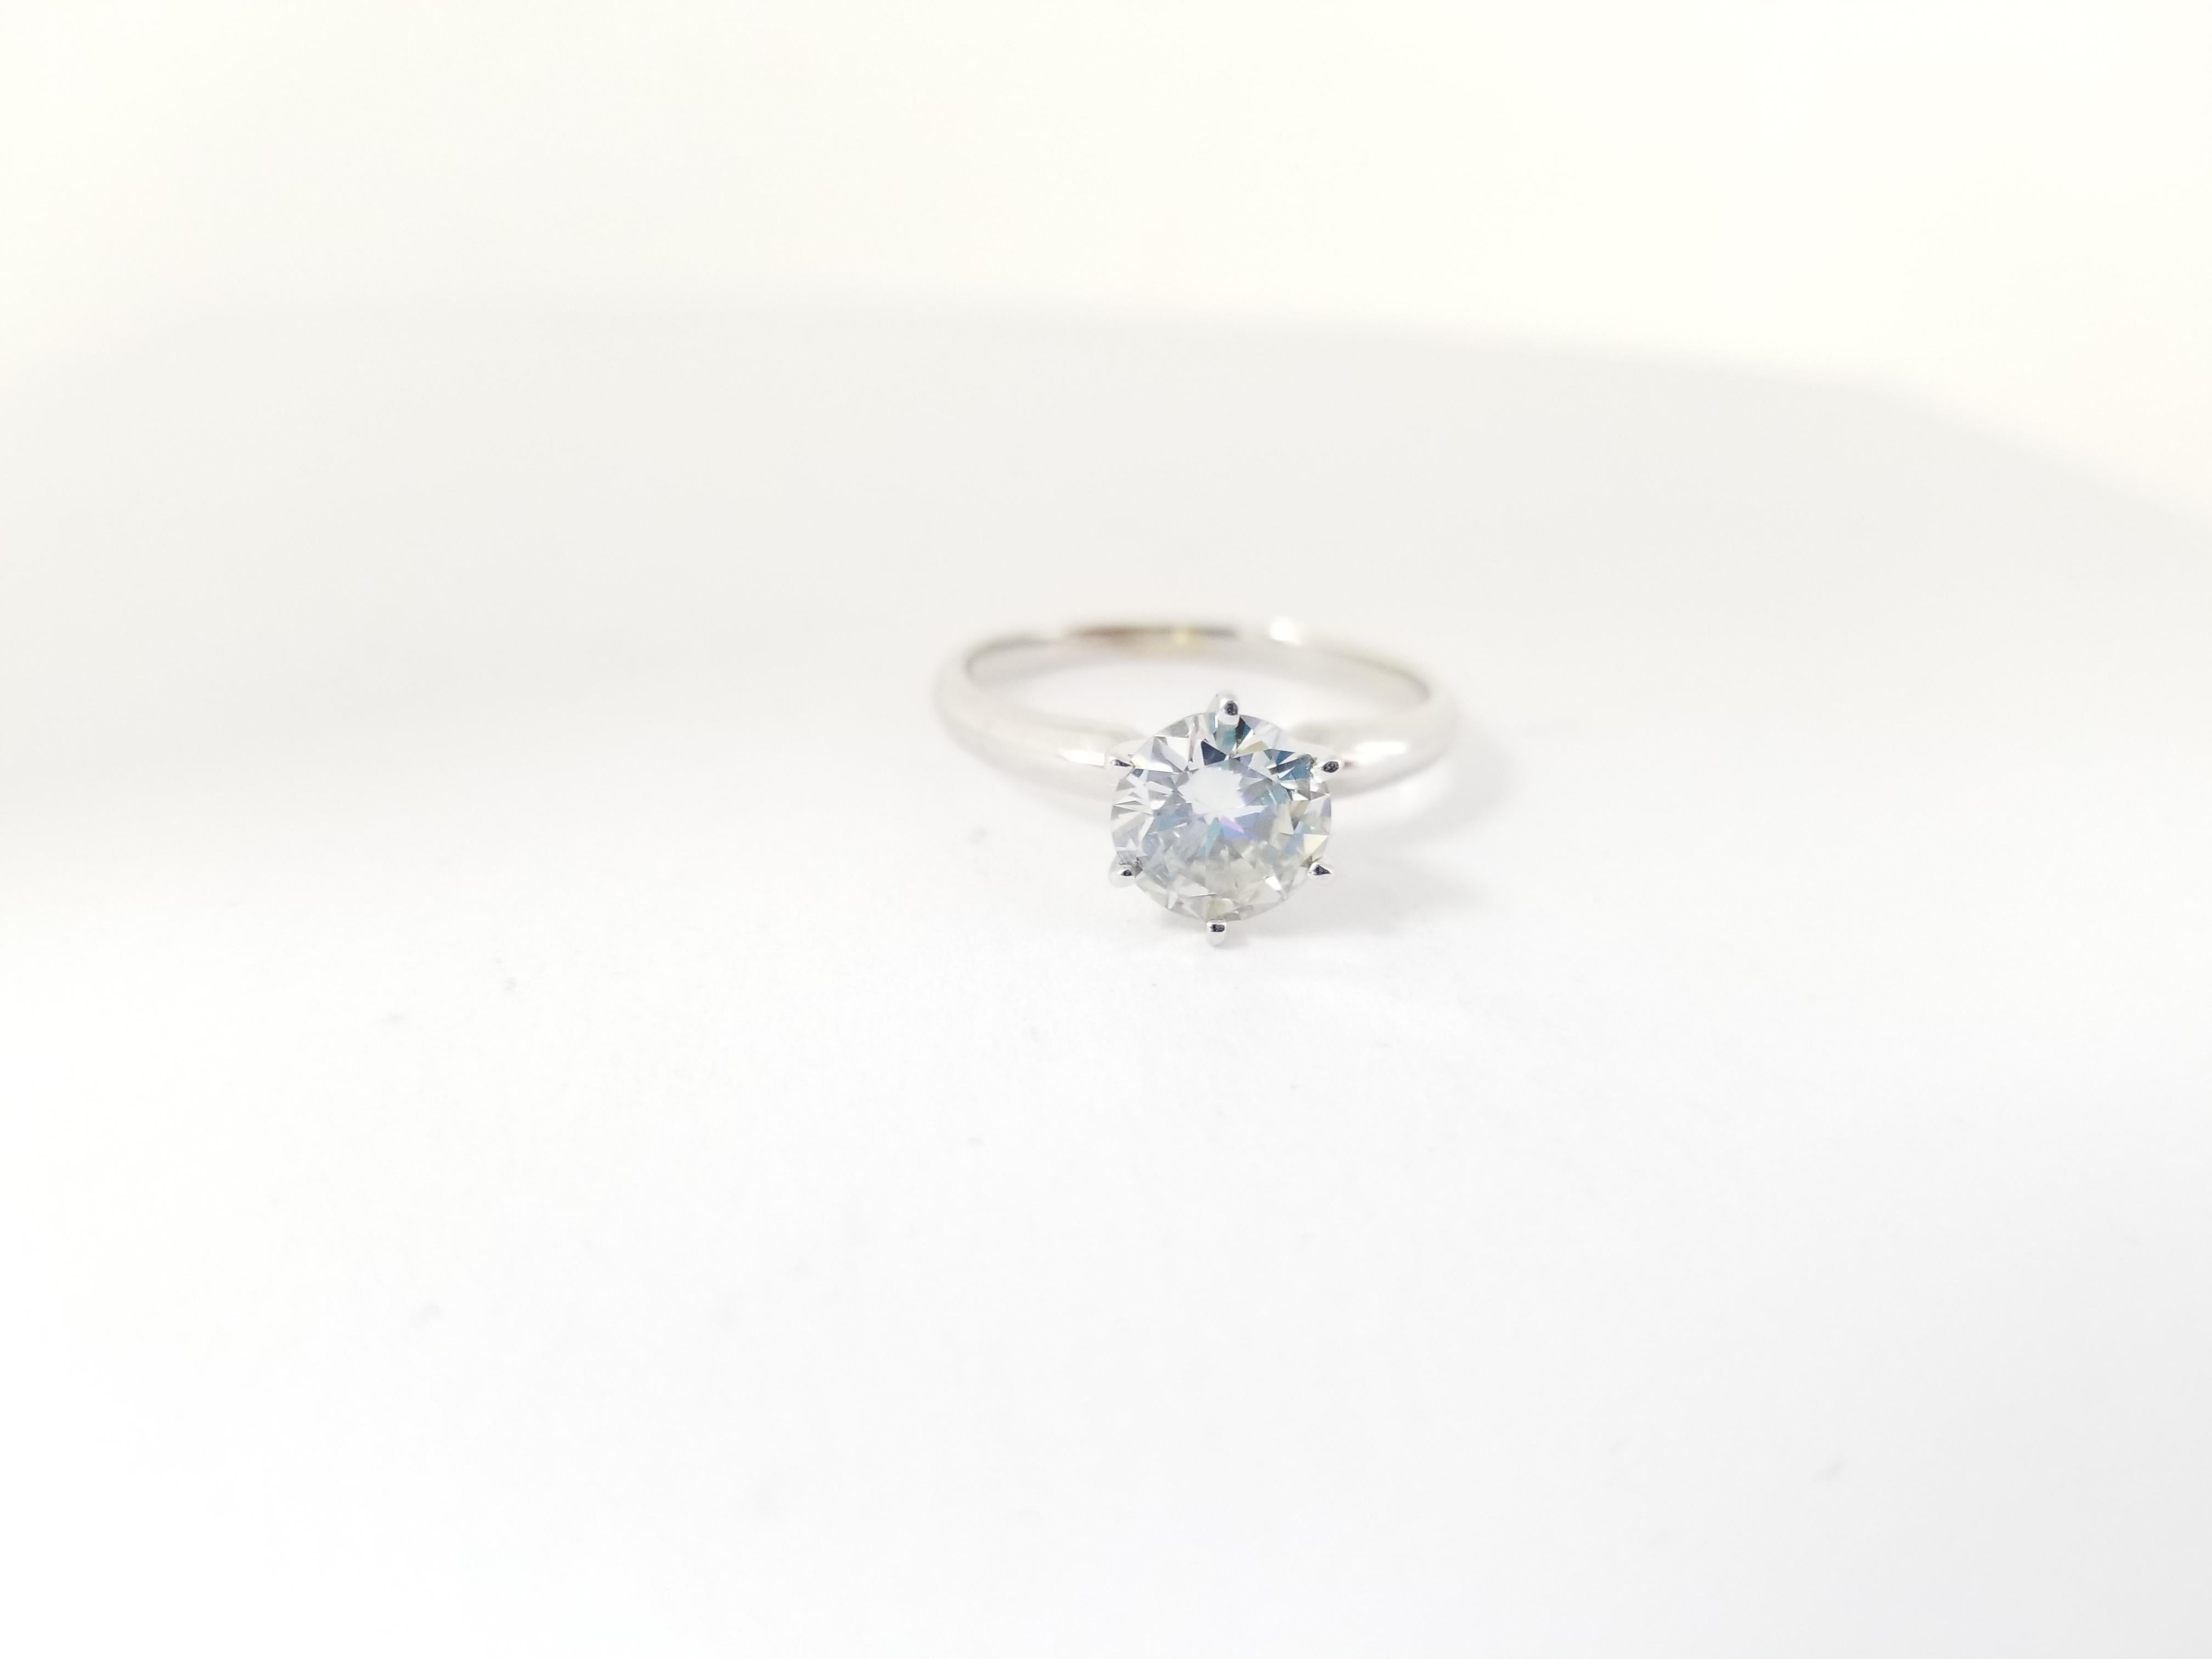 Diamant rond de couleur naturelle grise pesant 1,09 carats, certifié par le GIA. Serti sur or blanc 14K à 6 branches. 
Taille de l'anneau : 7.25